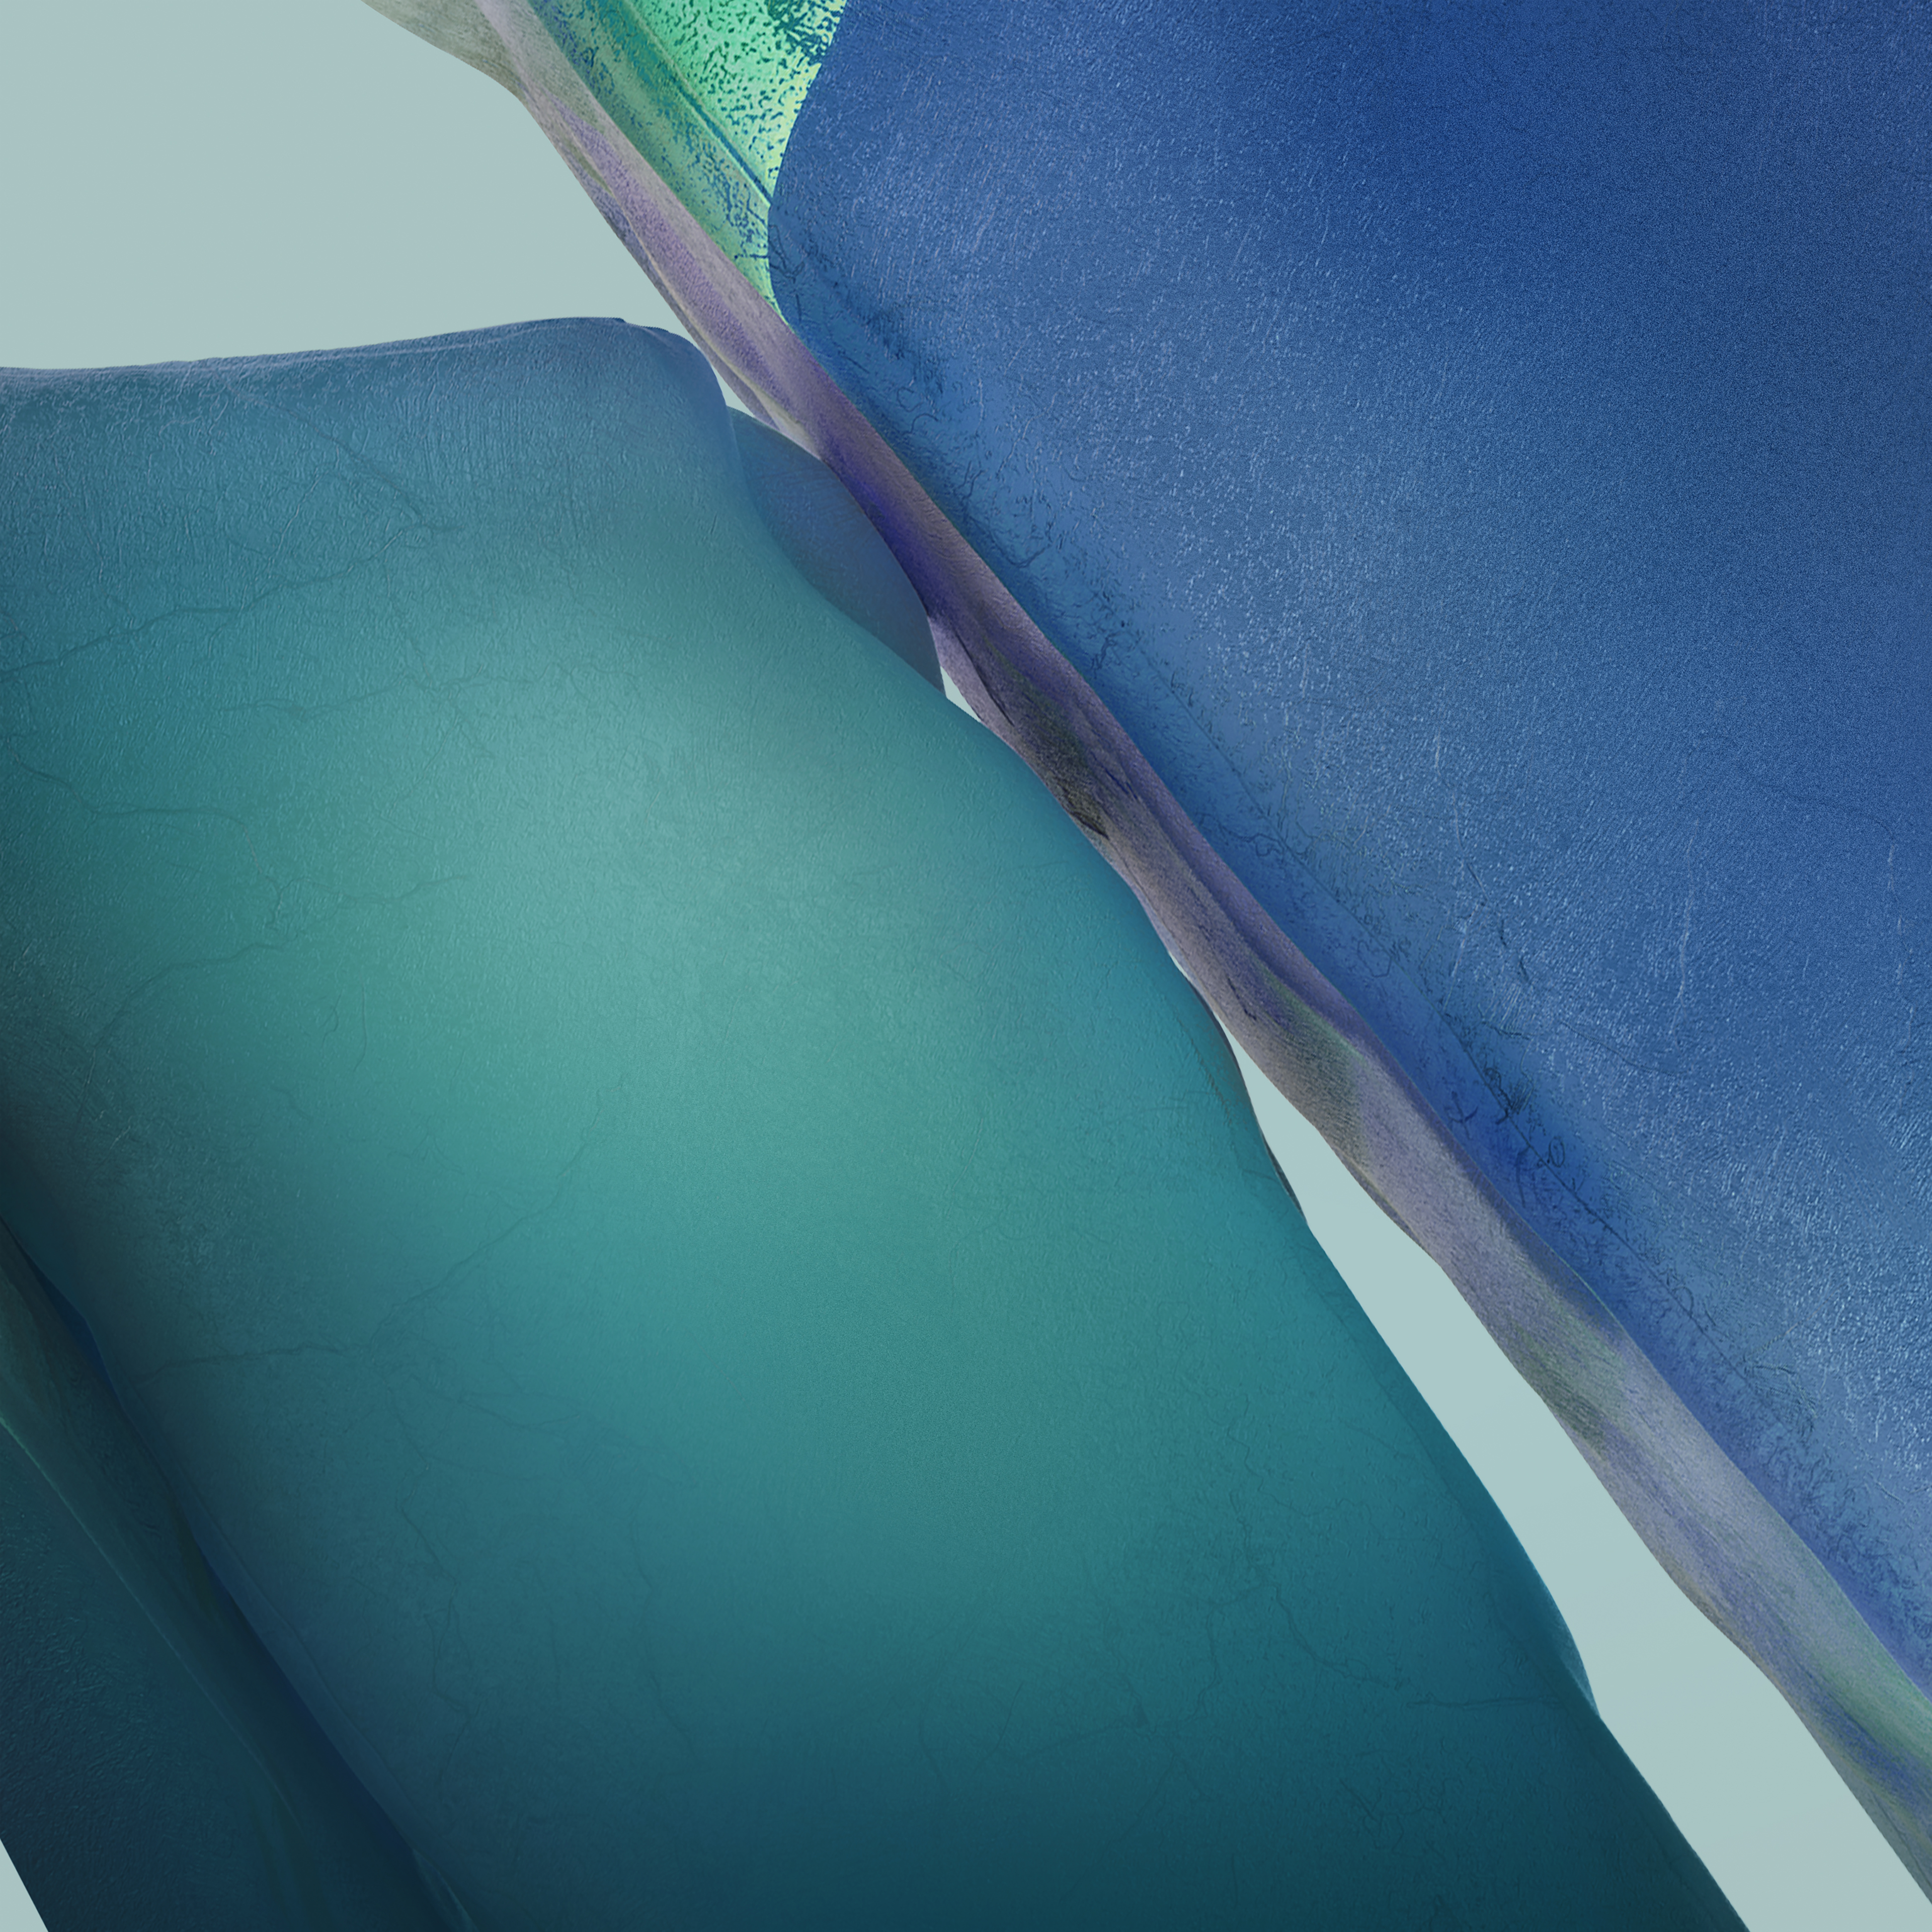 Hình nền Samsung Galaxy Note 20 Ultra 4K màu Teal, Turquoise, Blue thật sự độc đáo và ấn tượng. Hãy xem ngay hình ảnh để đắm chìm trong sắc xanh tươi mới, kết hợp cùng độ phân giải 4K mà mọi chi tiết đều trở nên rõ nét hơn. Đây chắc chắn sẽ là lựa chọn hoàn hảo cho người sành nền tảng Samsung.